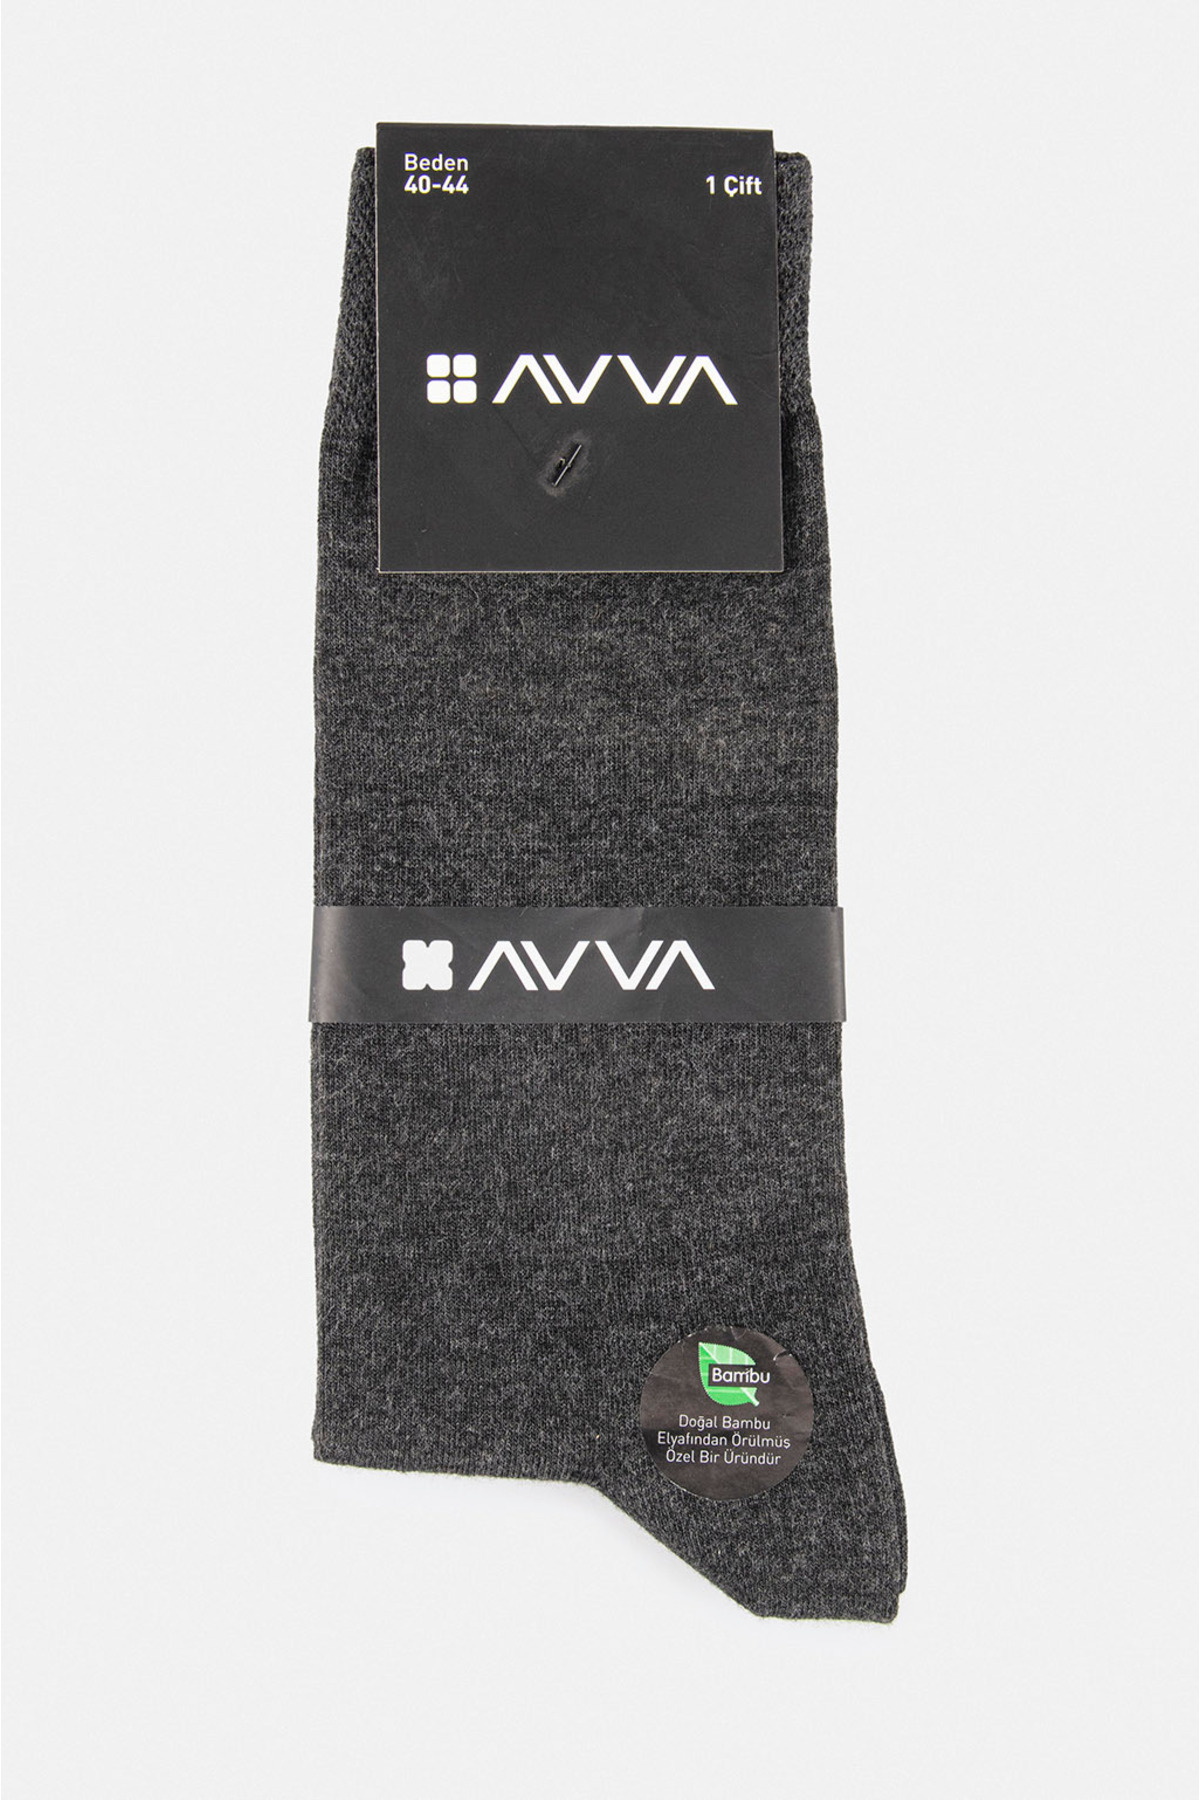 Avva Men's Anthracite Plain Bamboo Socks